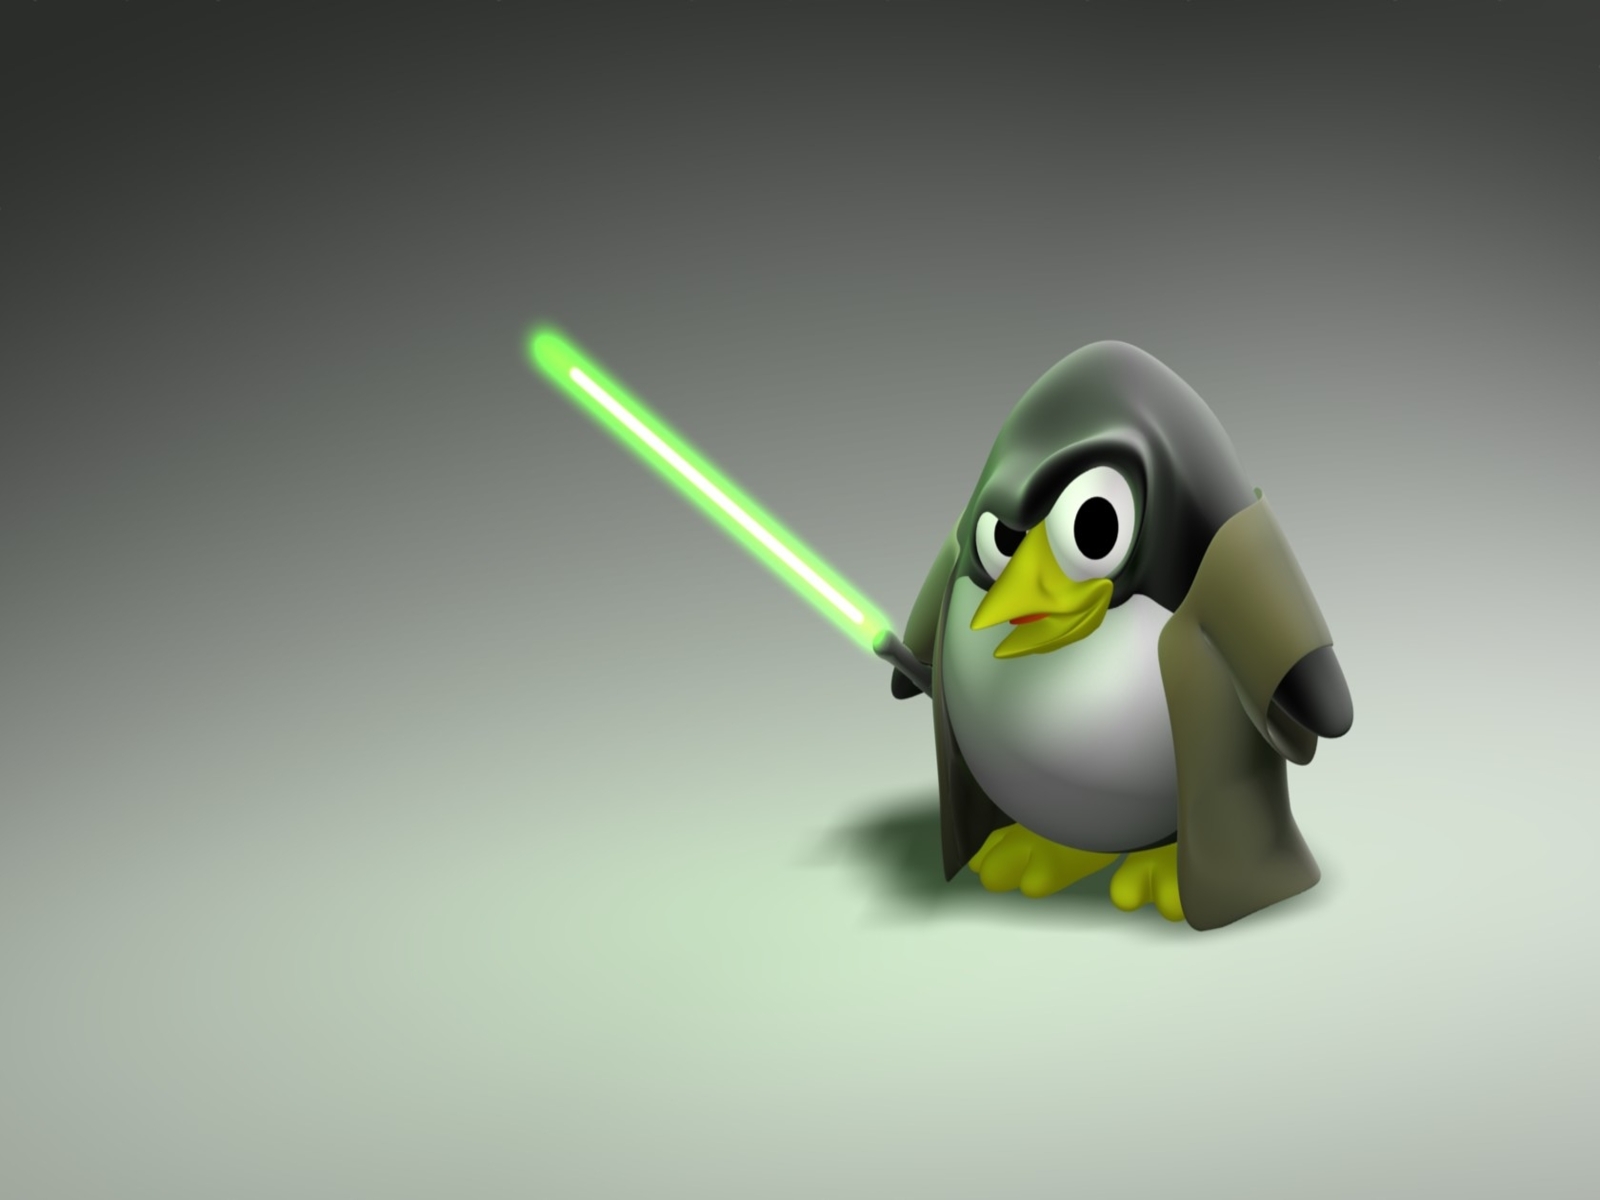 linux desktop wallpaper,flightless bird,penguin,bird,cartoon,animation